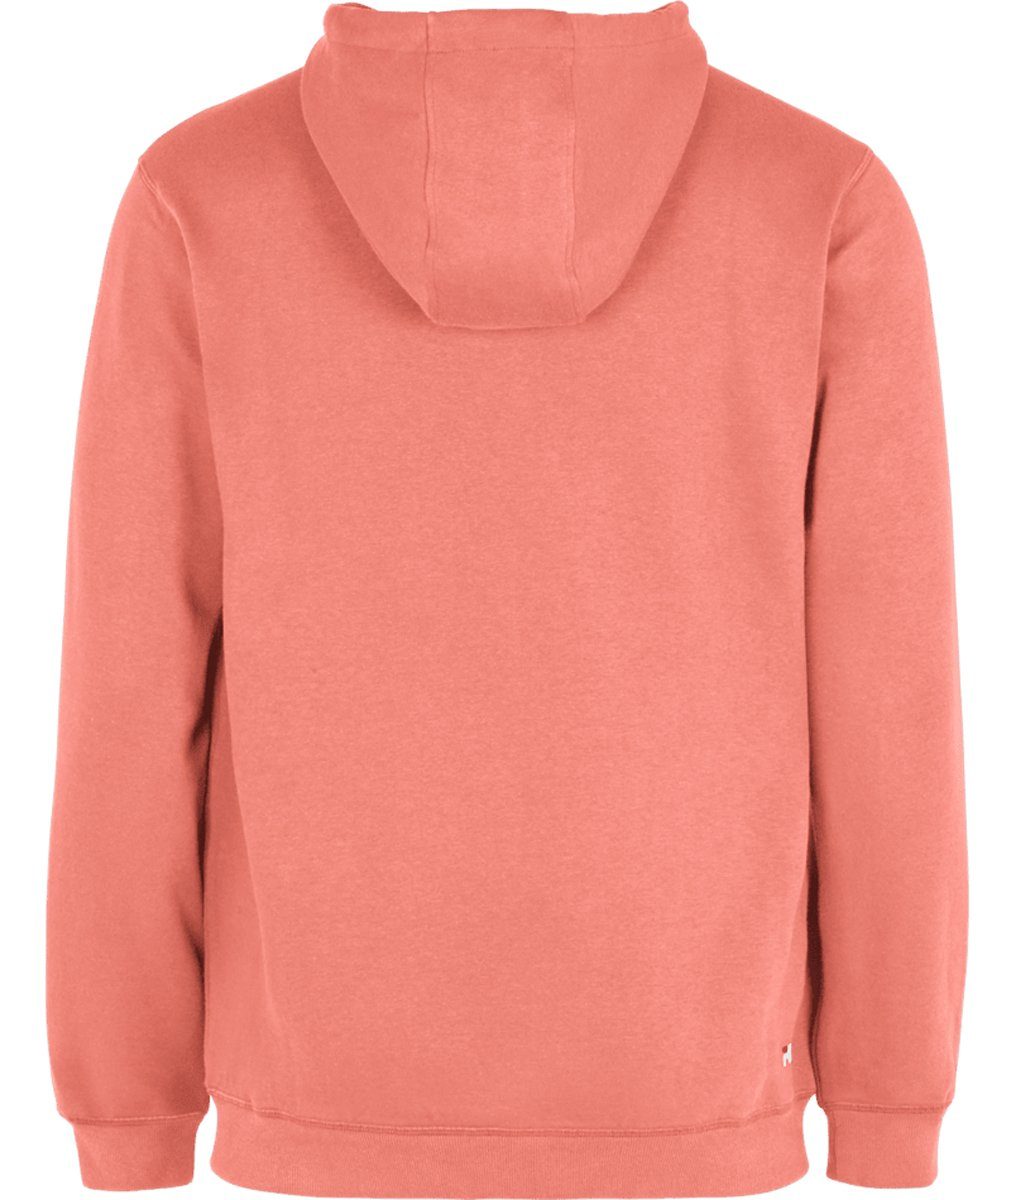 Fila Sweater Unisex Hoodie Sweatshirt - BARUMINI hoody, Rosa